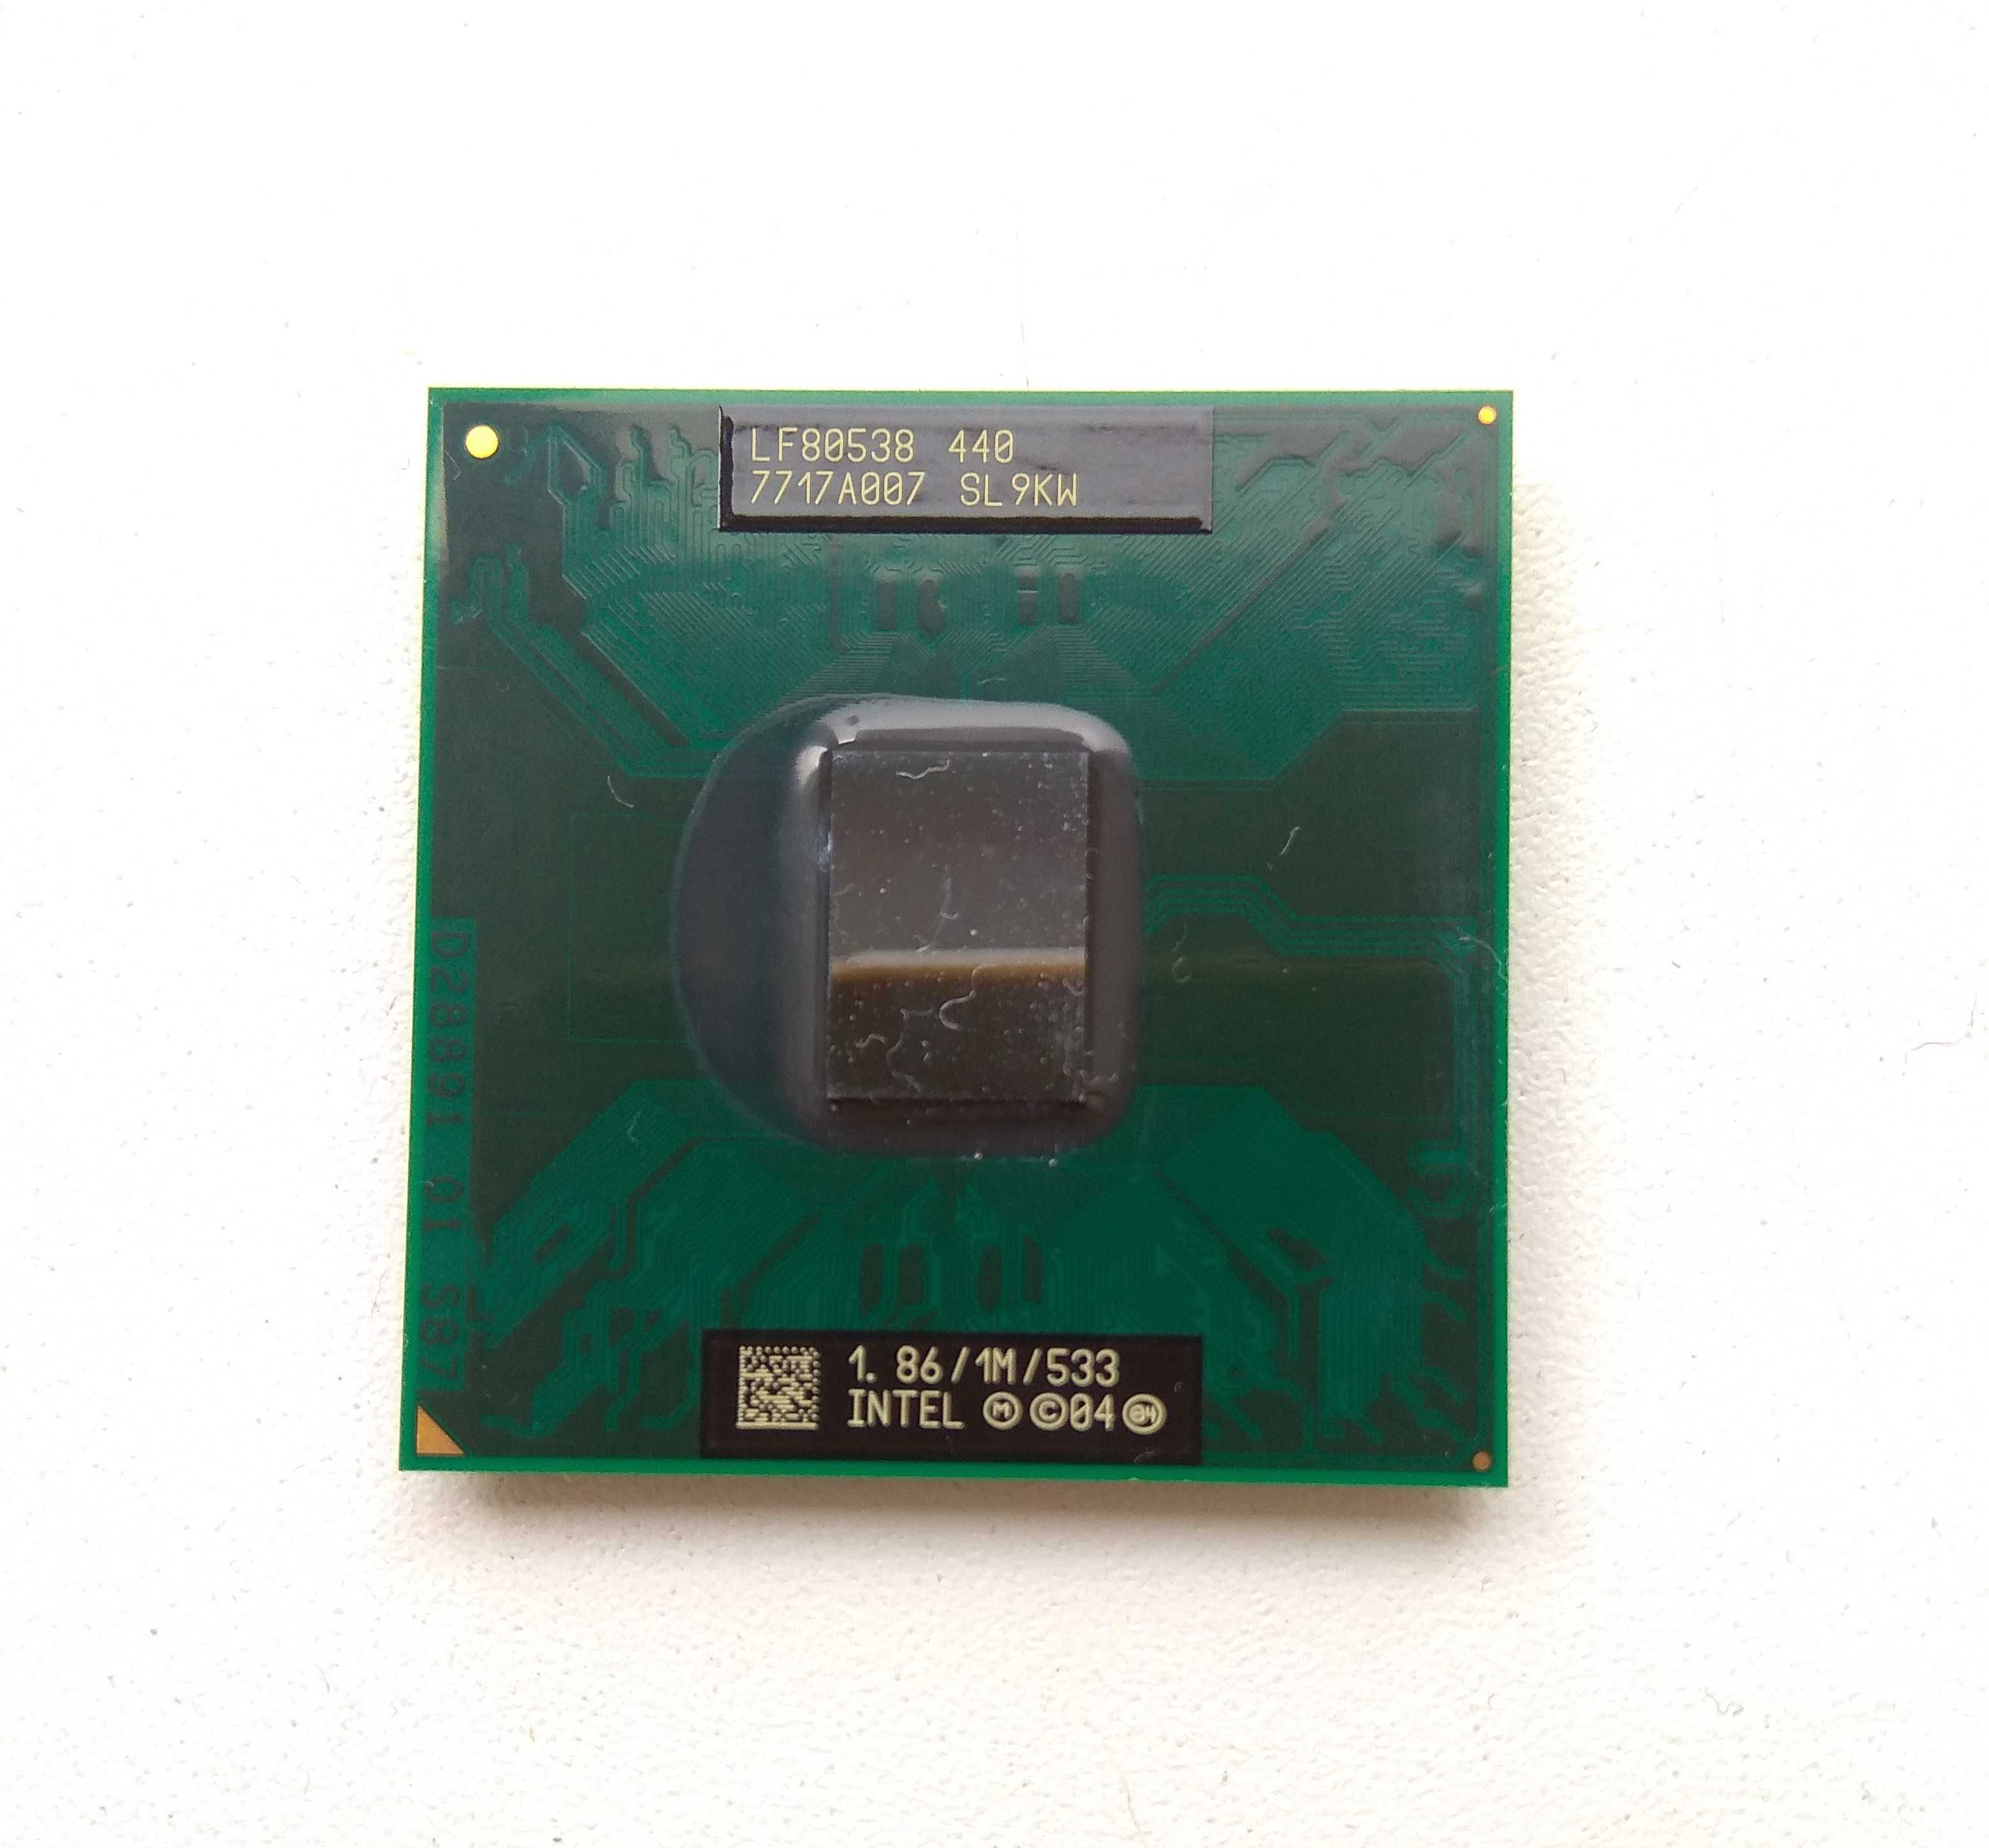 Процесор Intel Celeron M 440 (SL9KW, LF80538 440, 1.86 GHz)